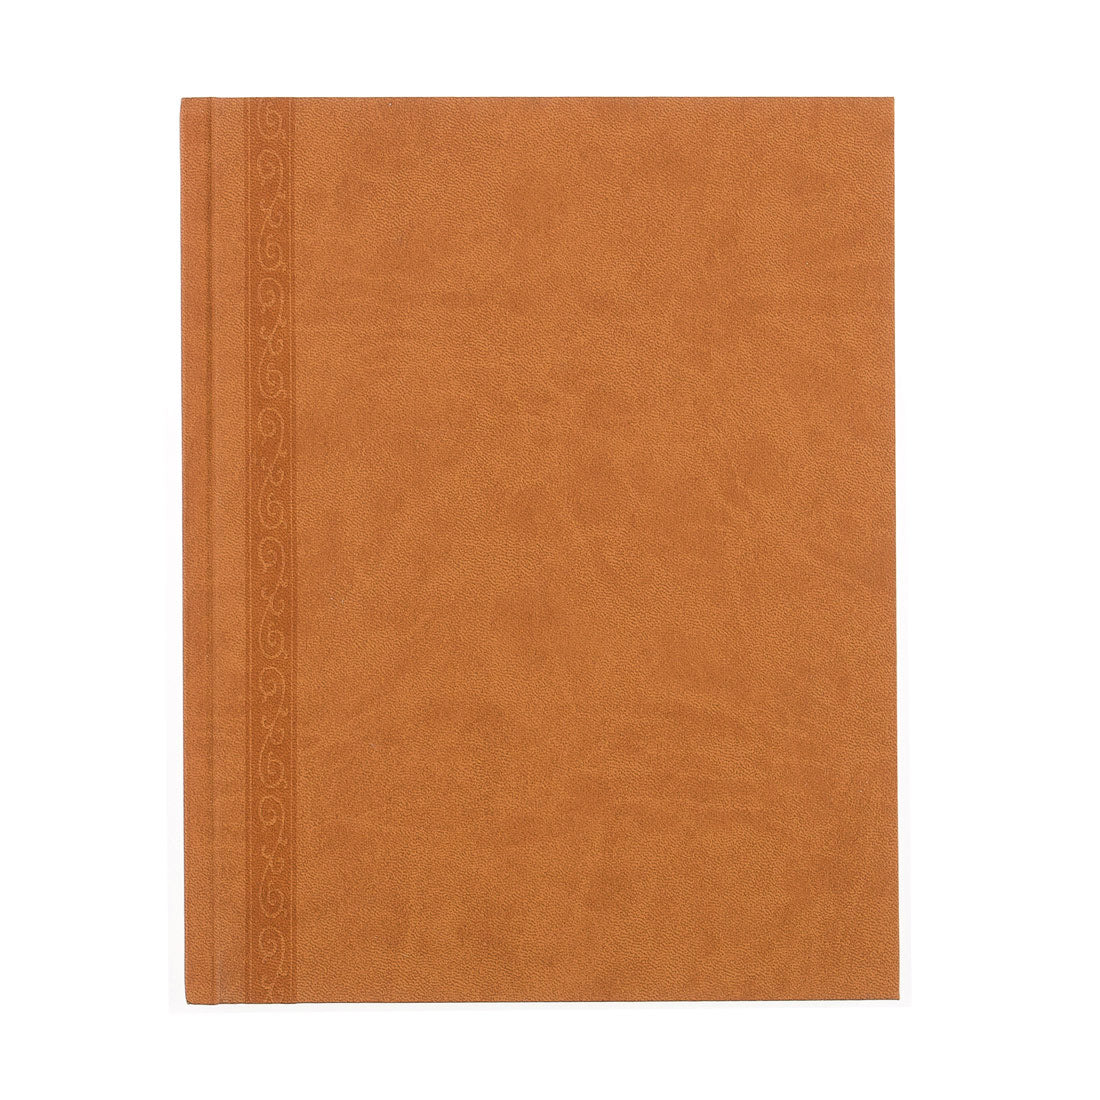 Executive Journal Da Vinci Collection, A8004